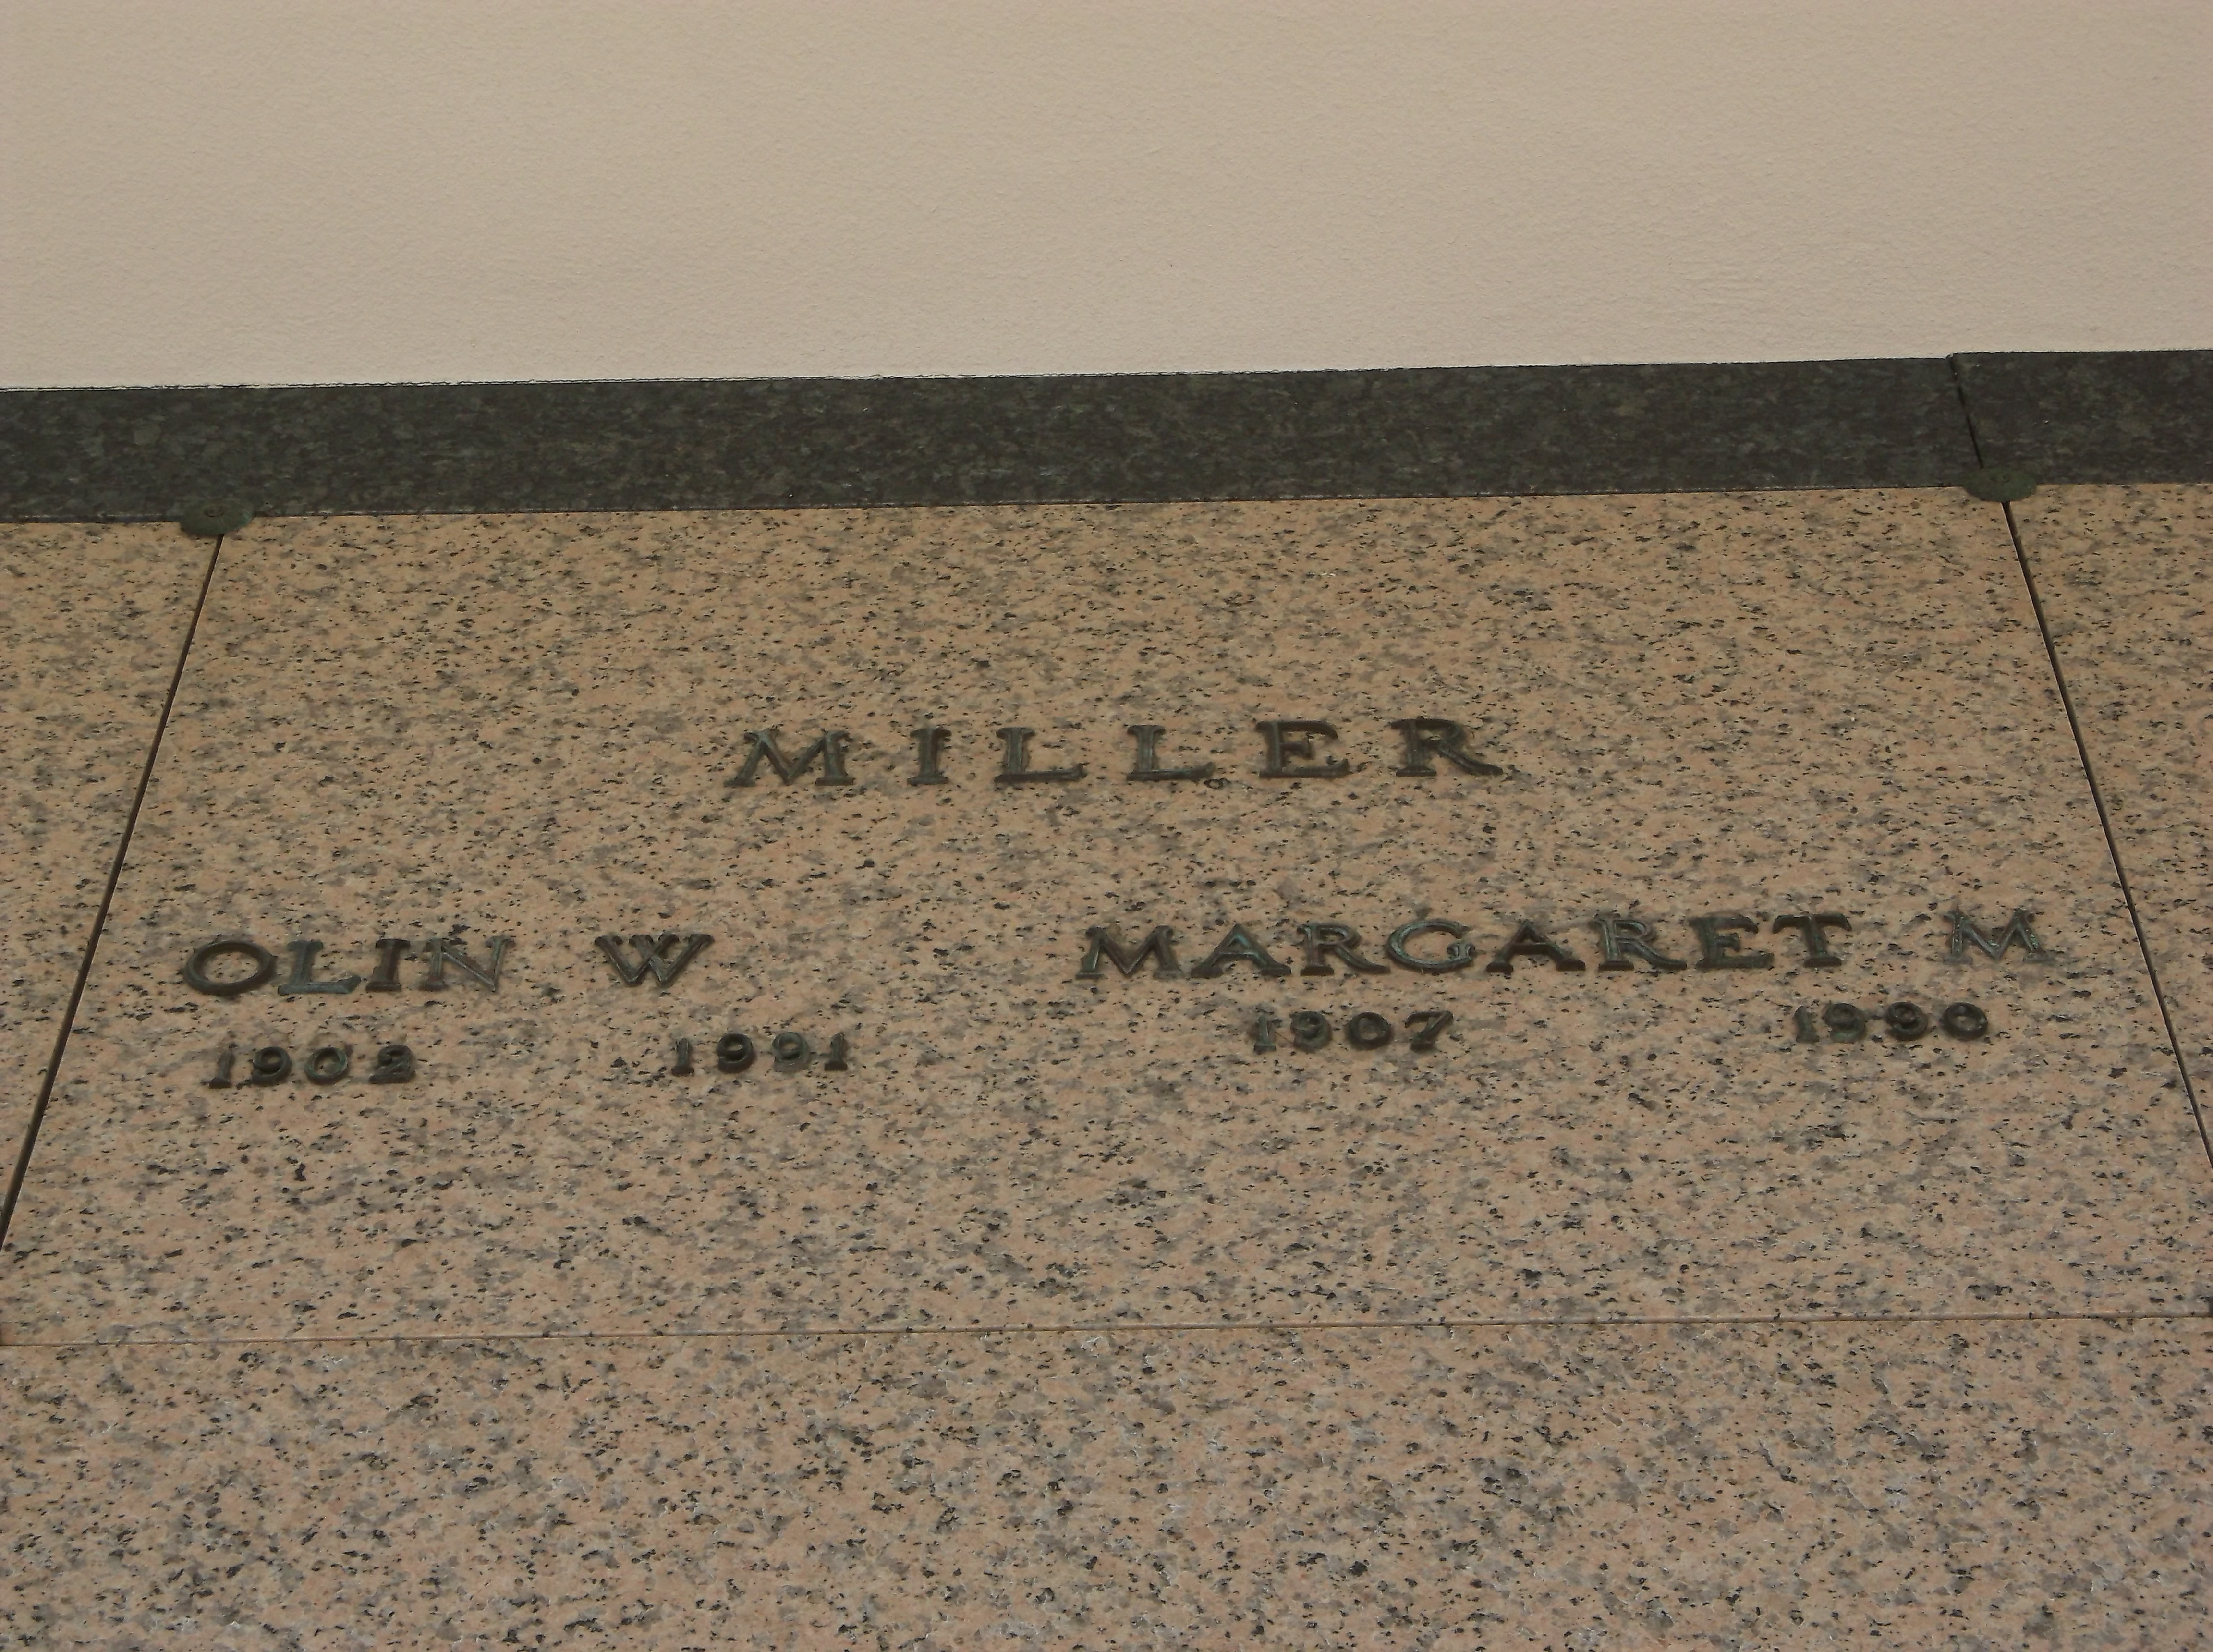 Olin W Miller